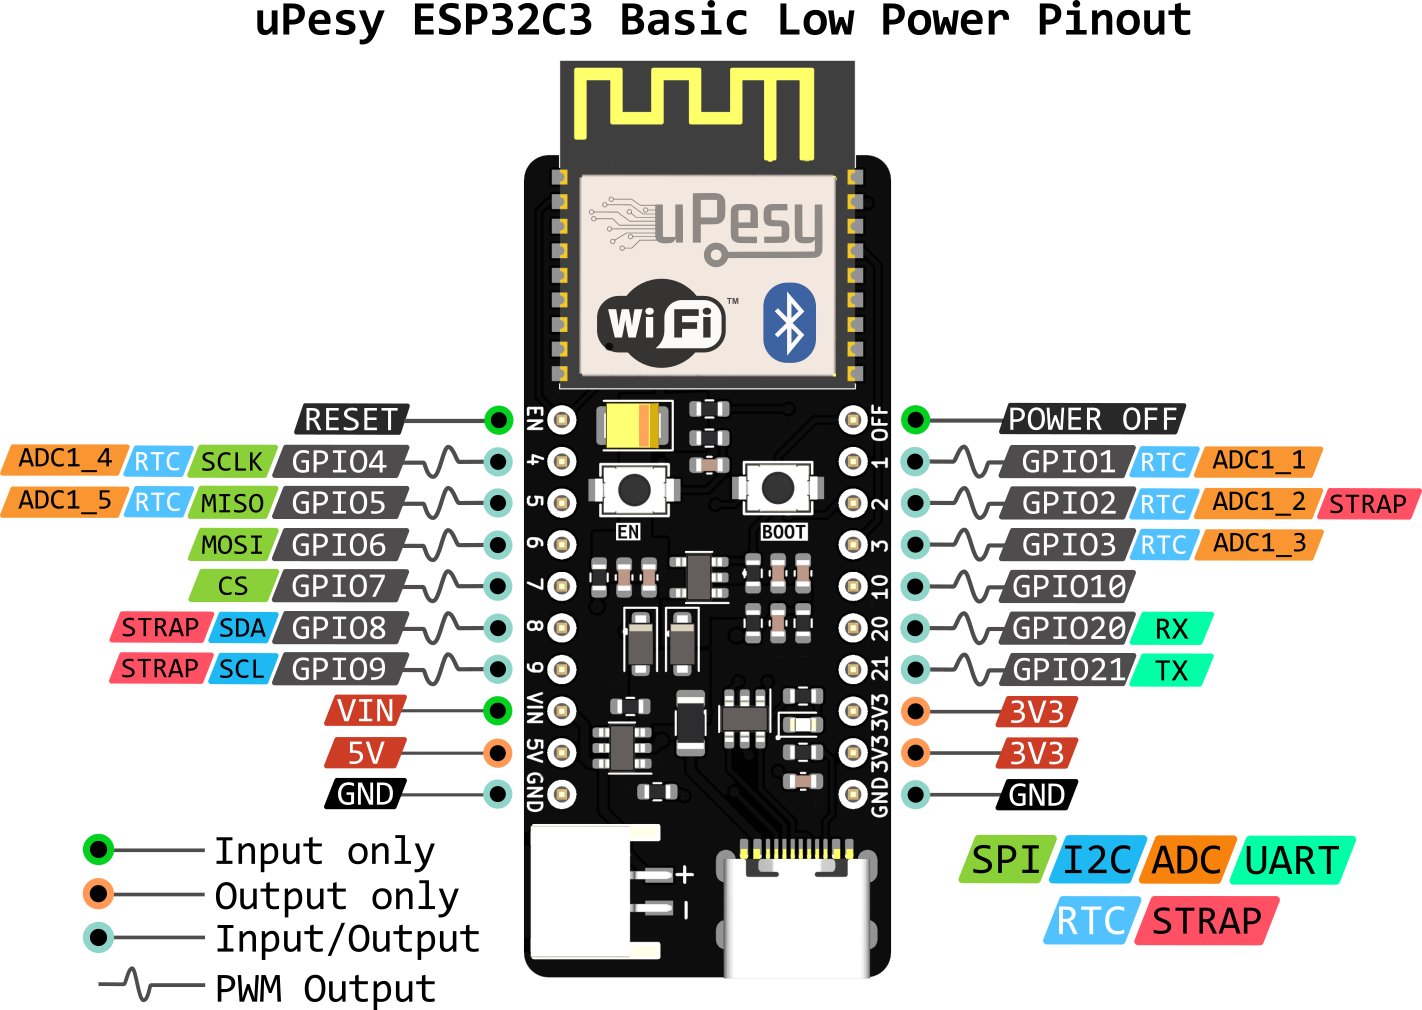 schéma des broches de l’uPesy ESP32-C3 Low Power Basic